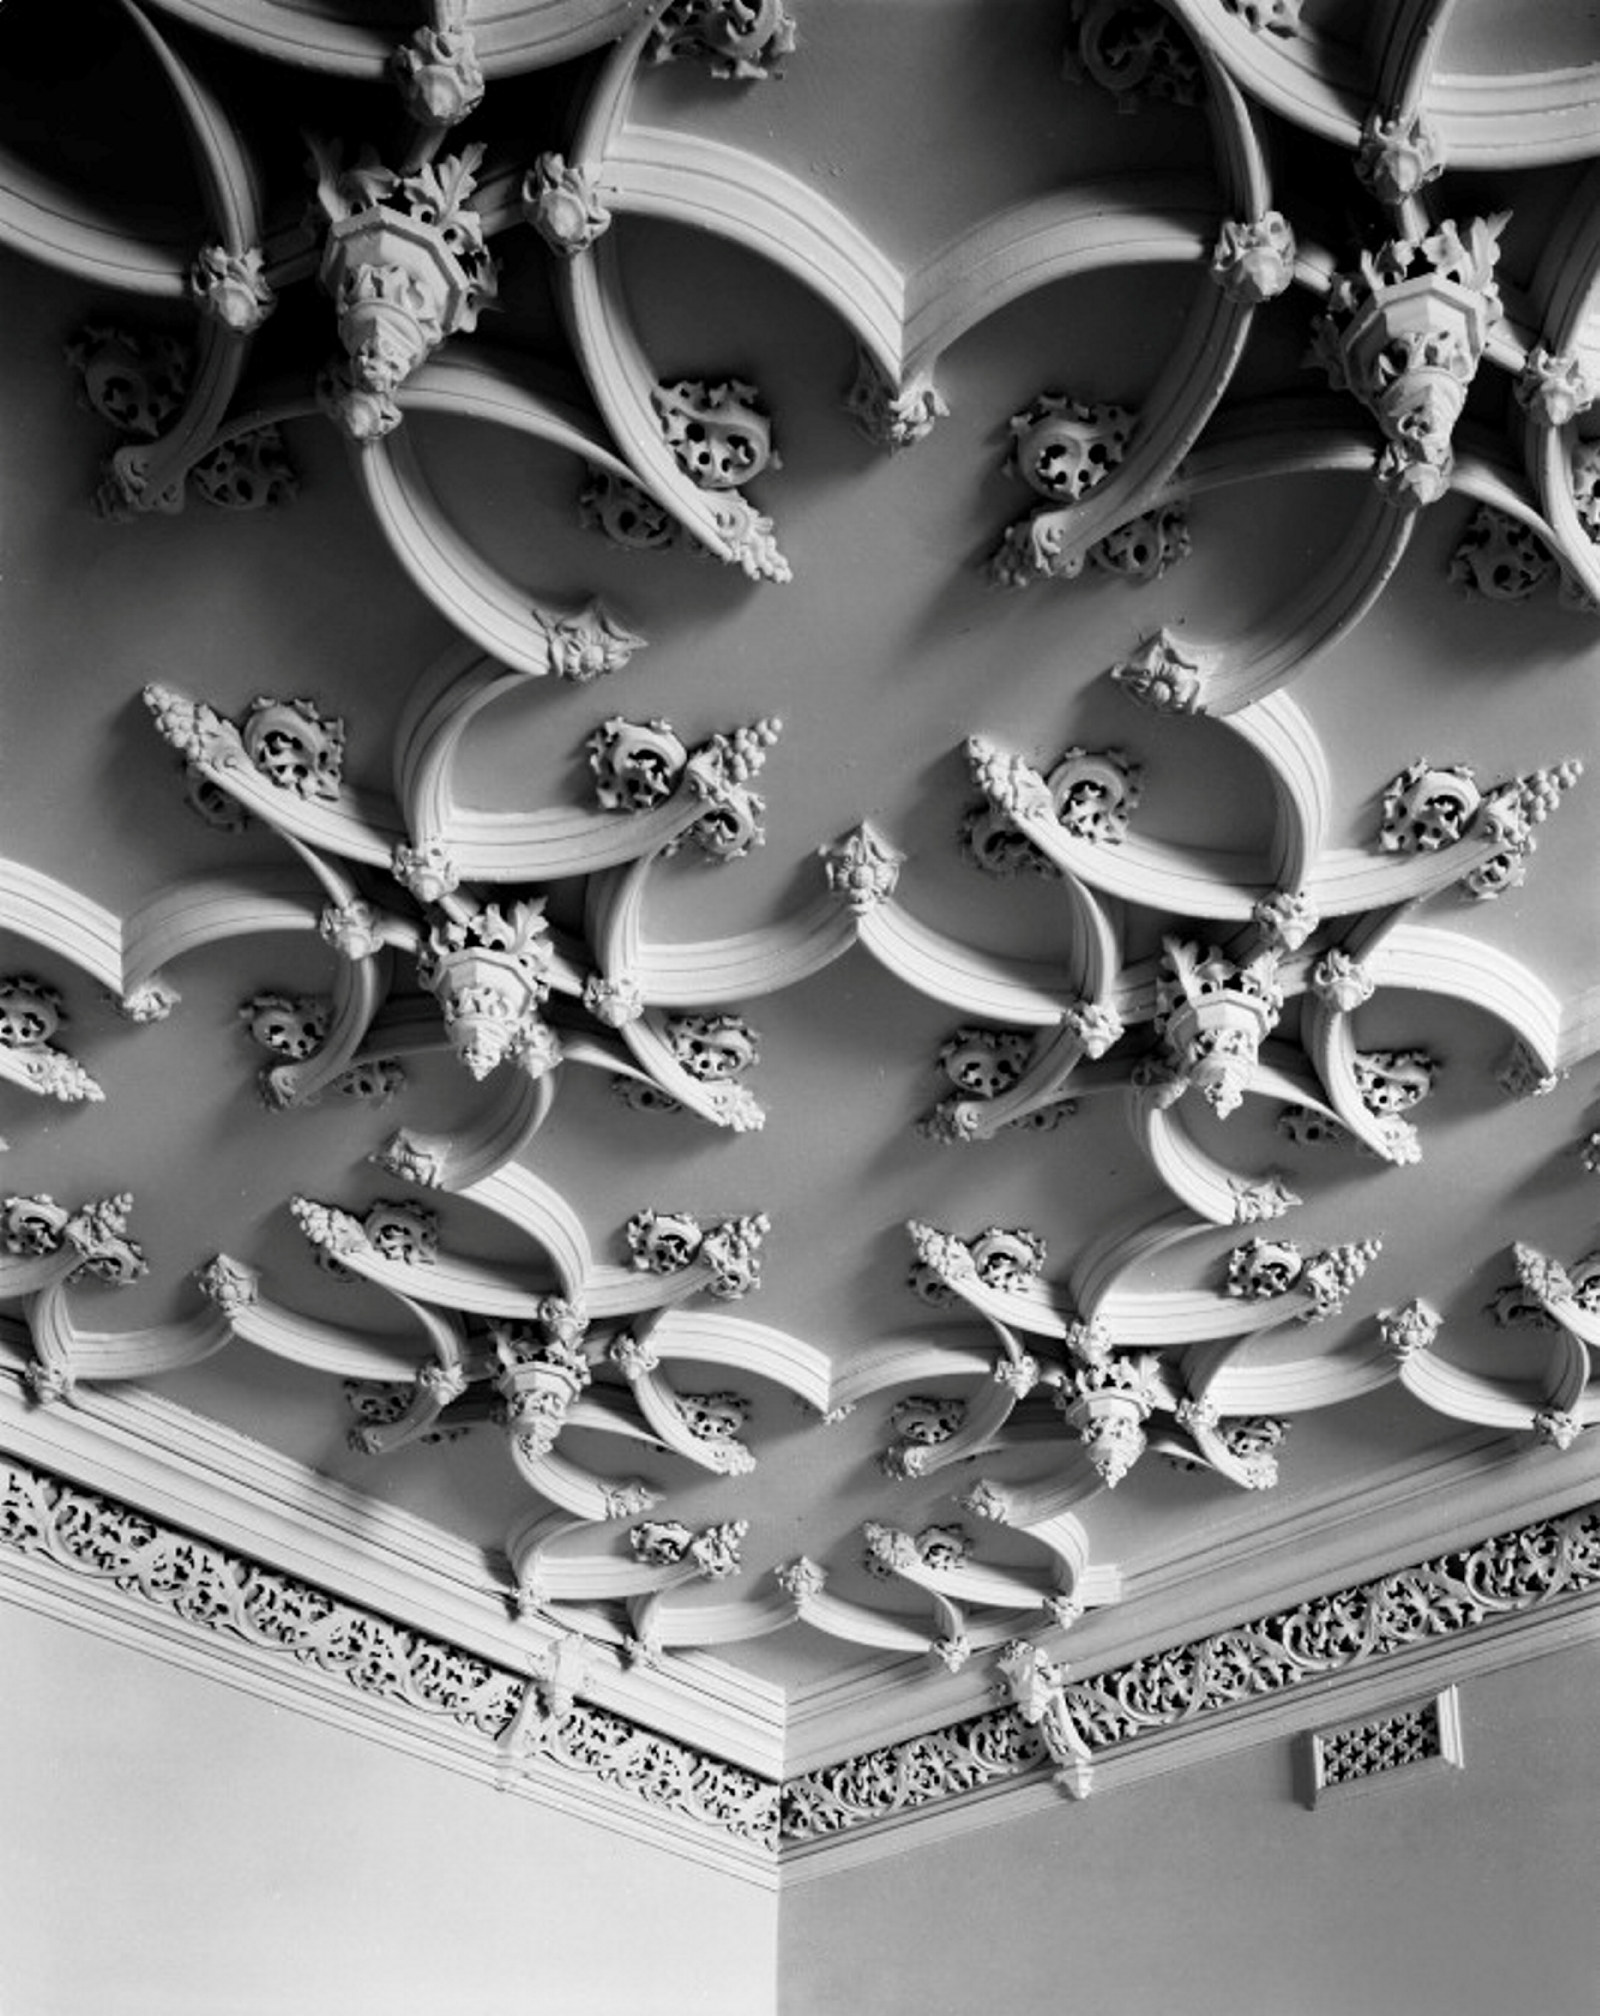 Papier-mÃ¢chÃ© ceiling ornament, Bishopscourt